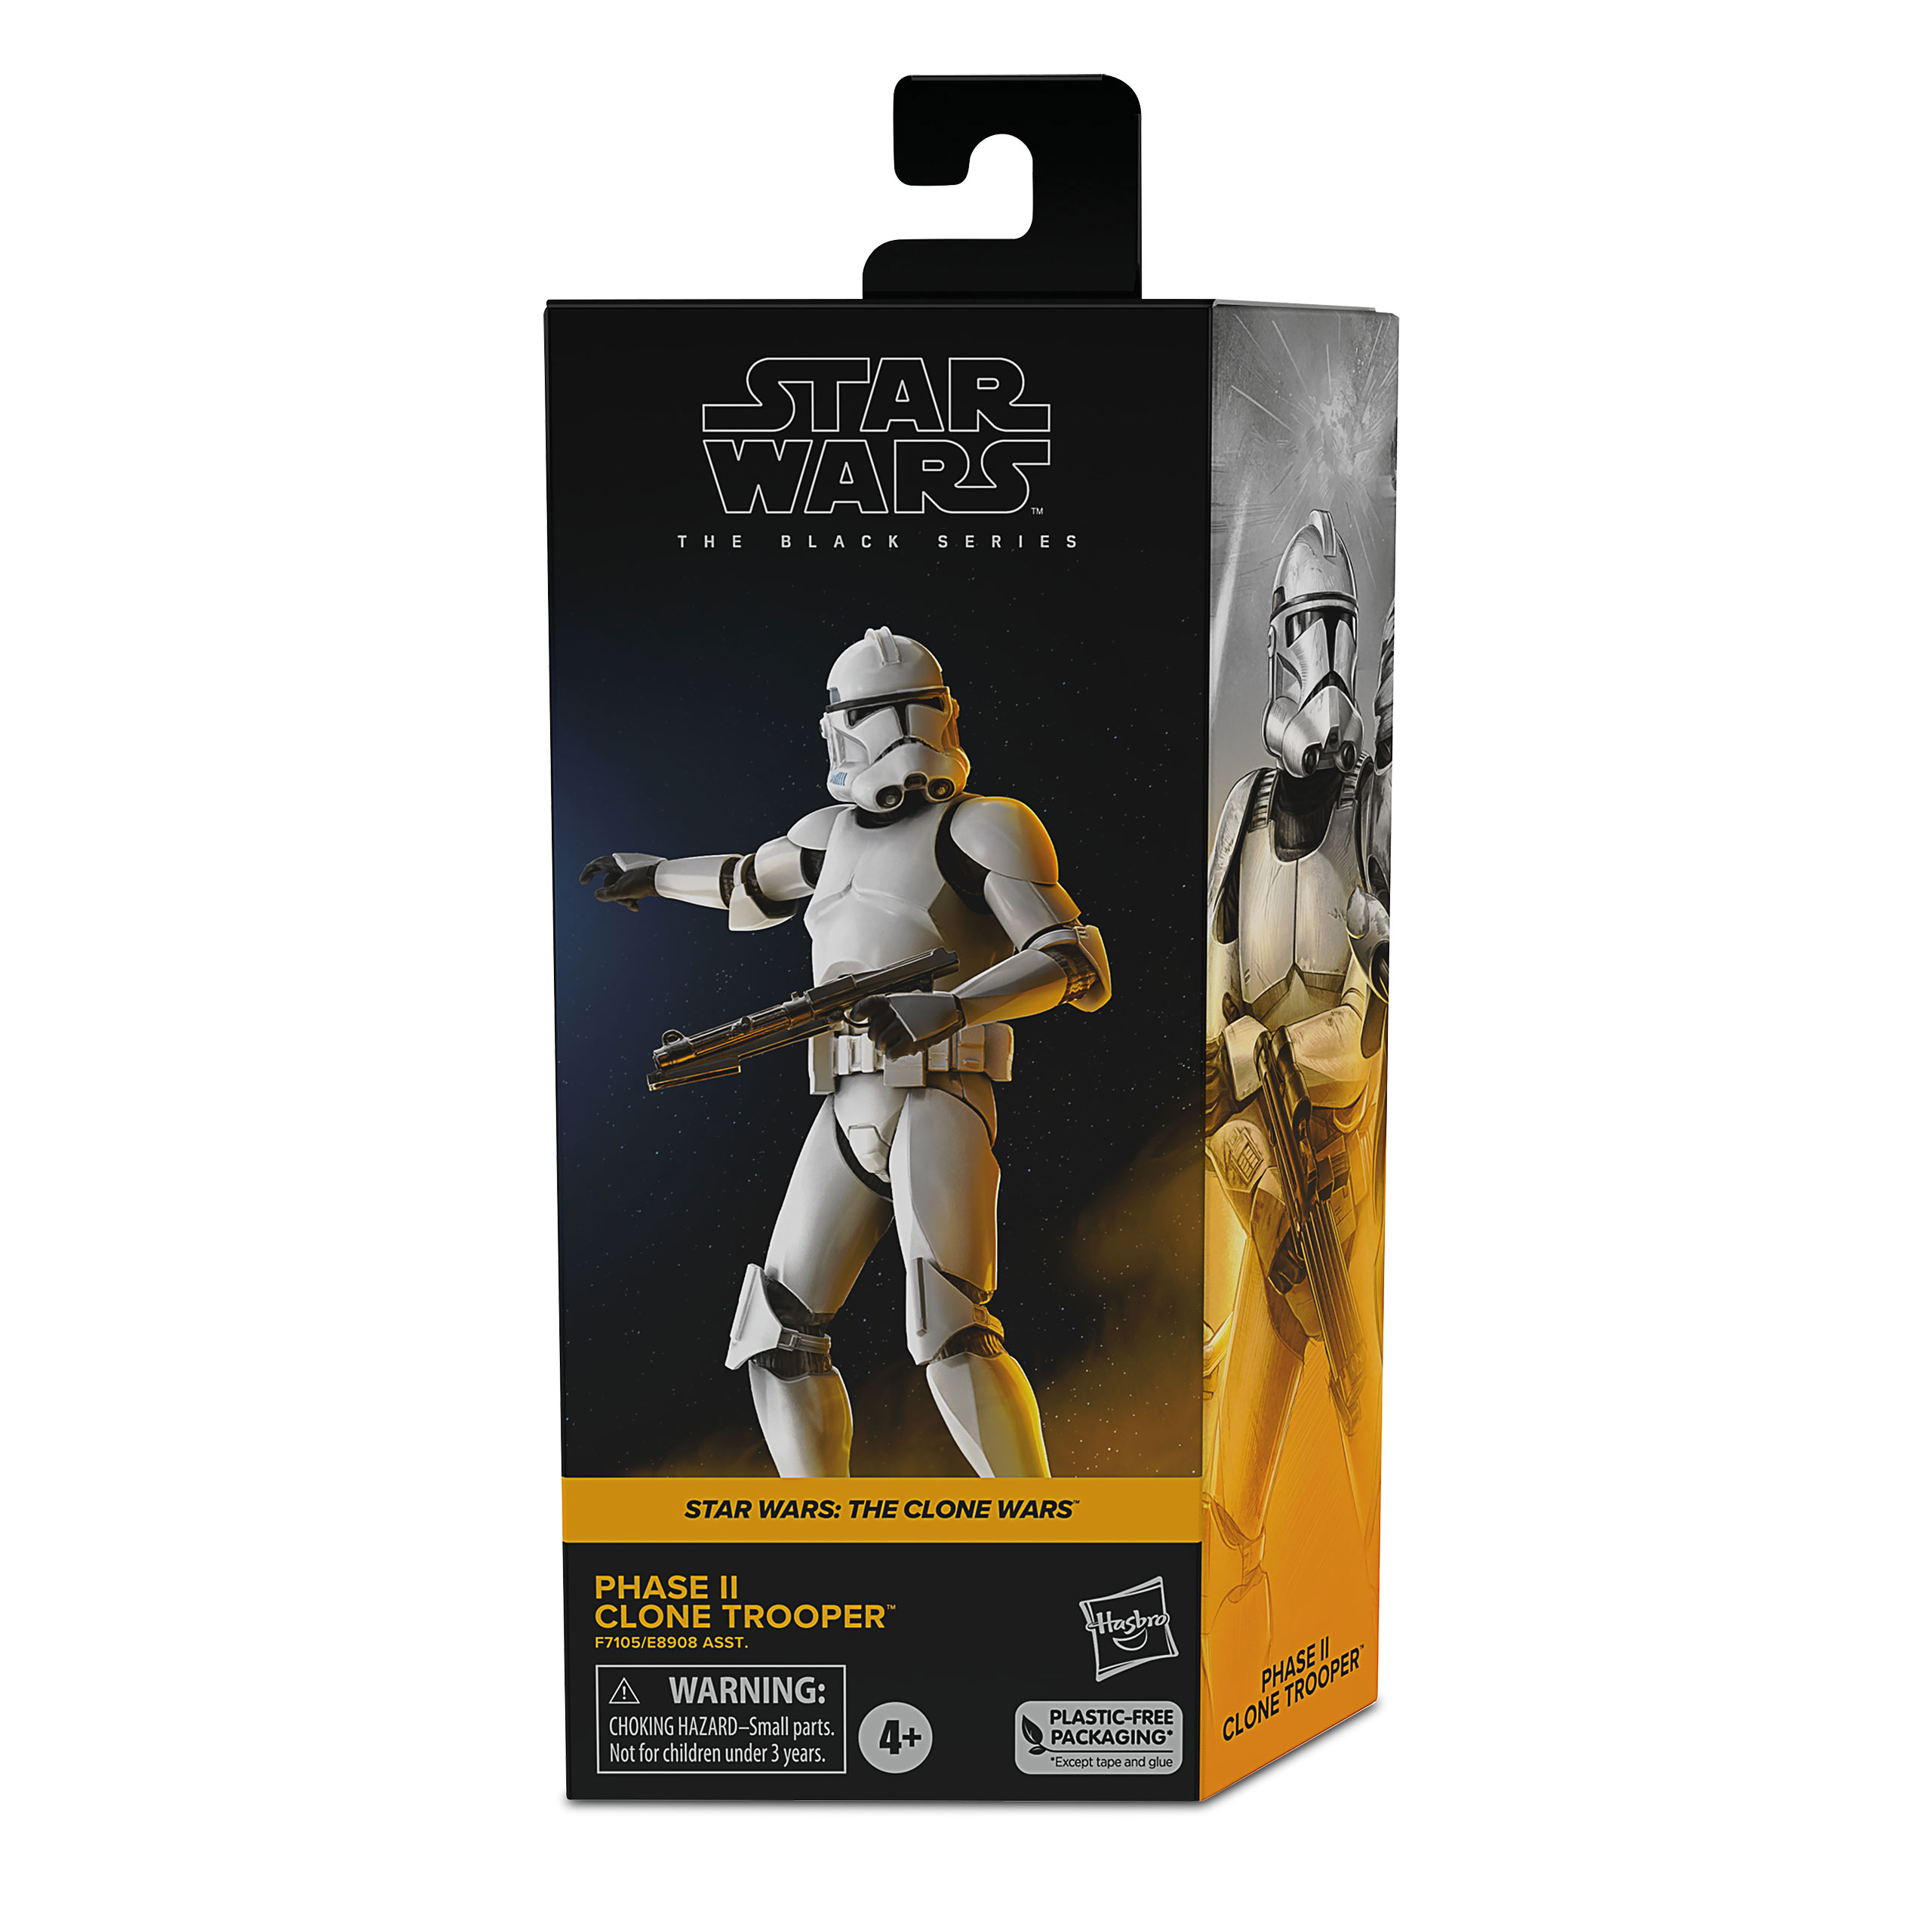 Star Wars The Clone Wars - Fase II Clone Trooper Black Series Actiefiguur